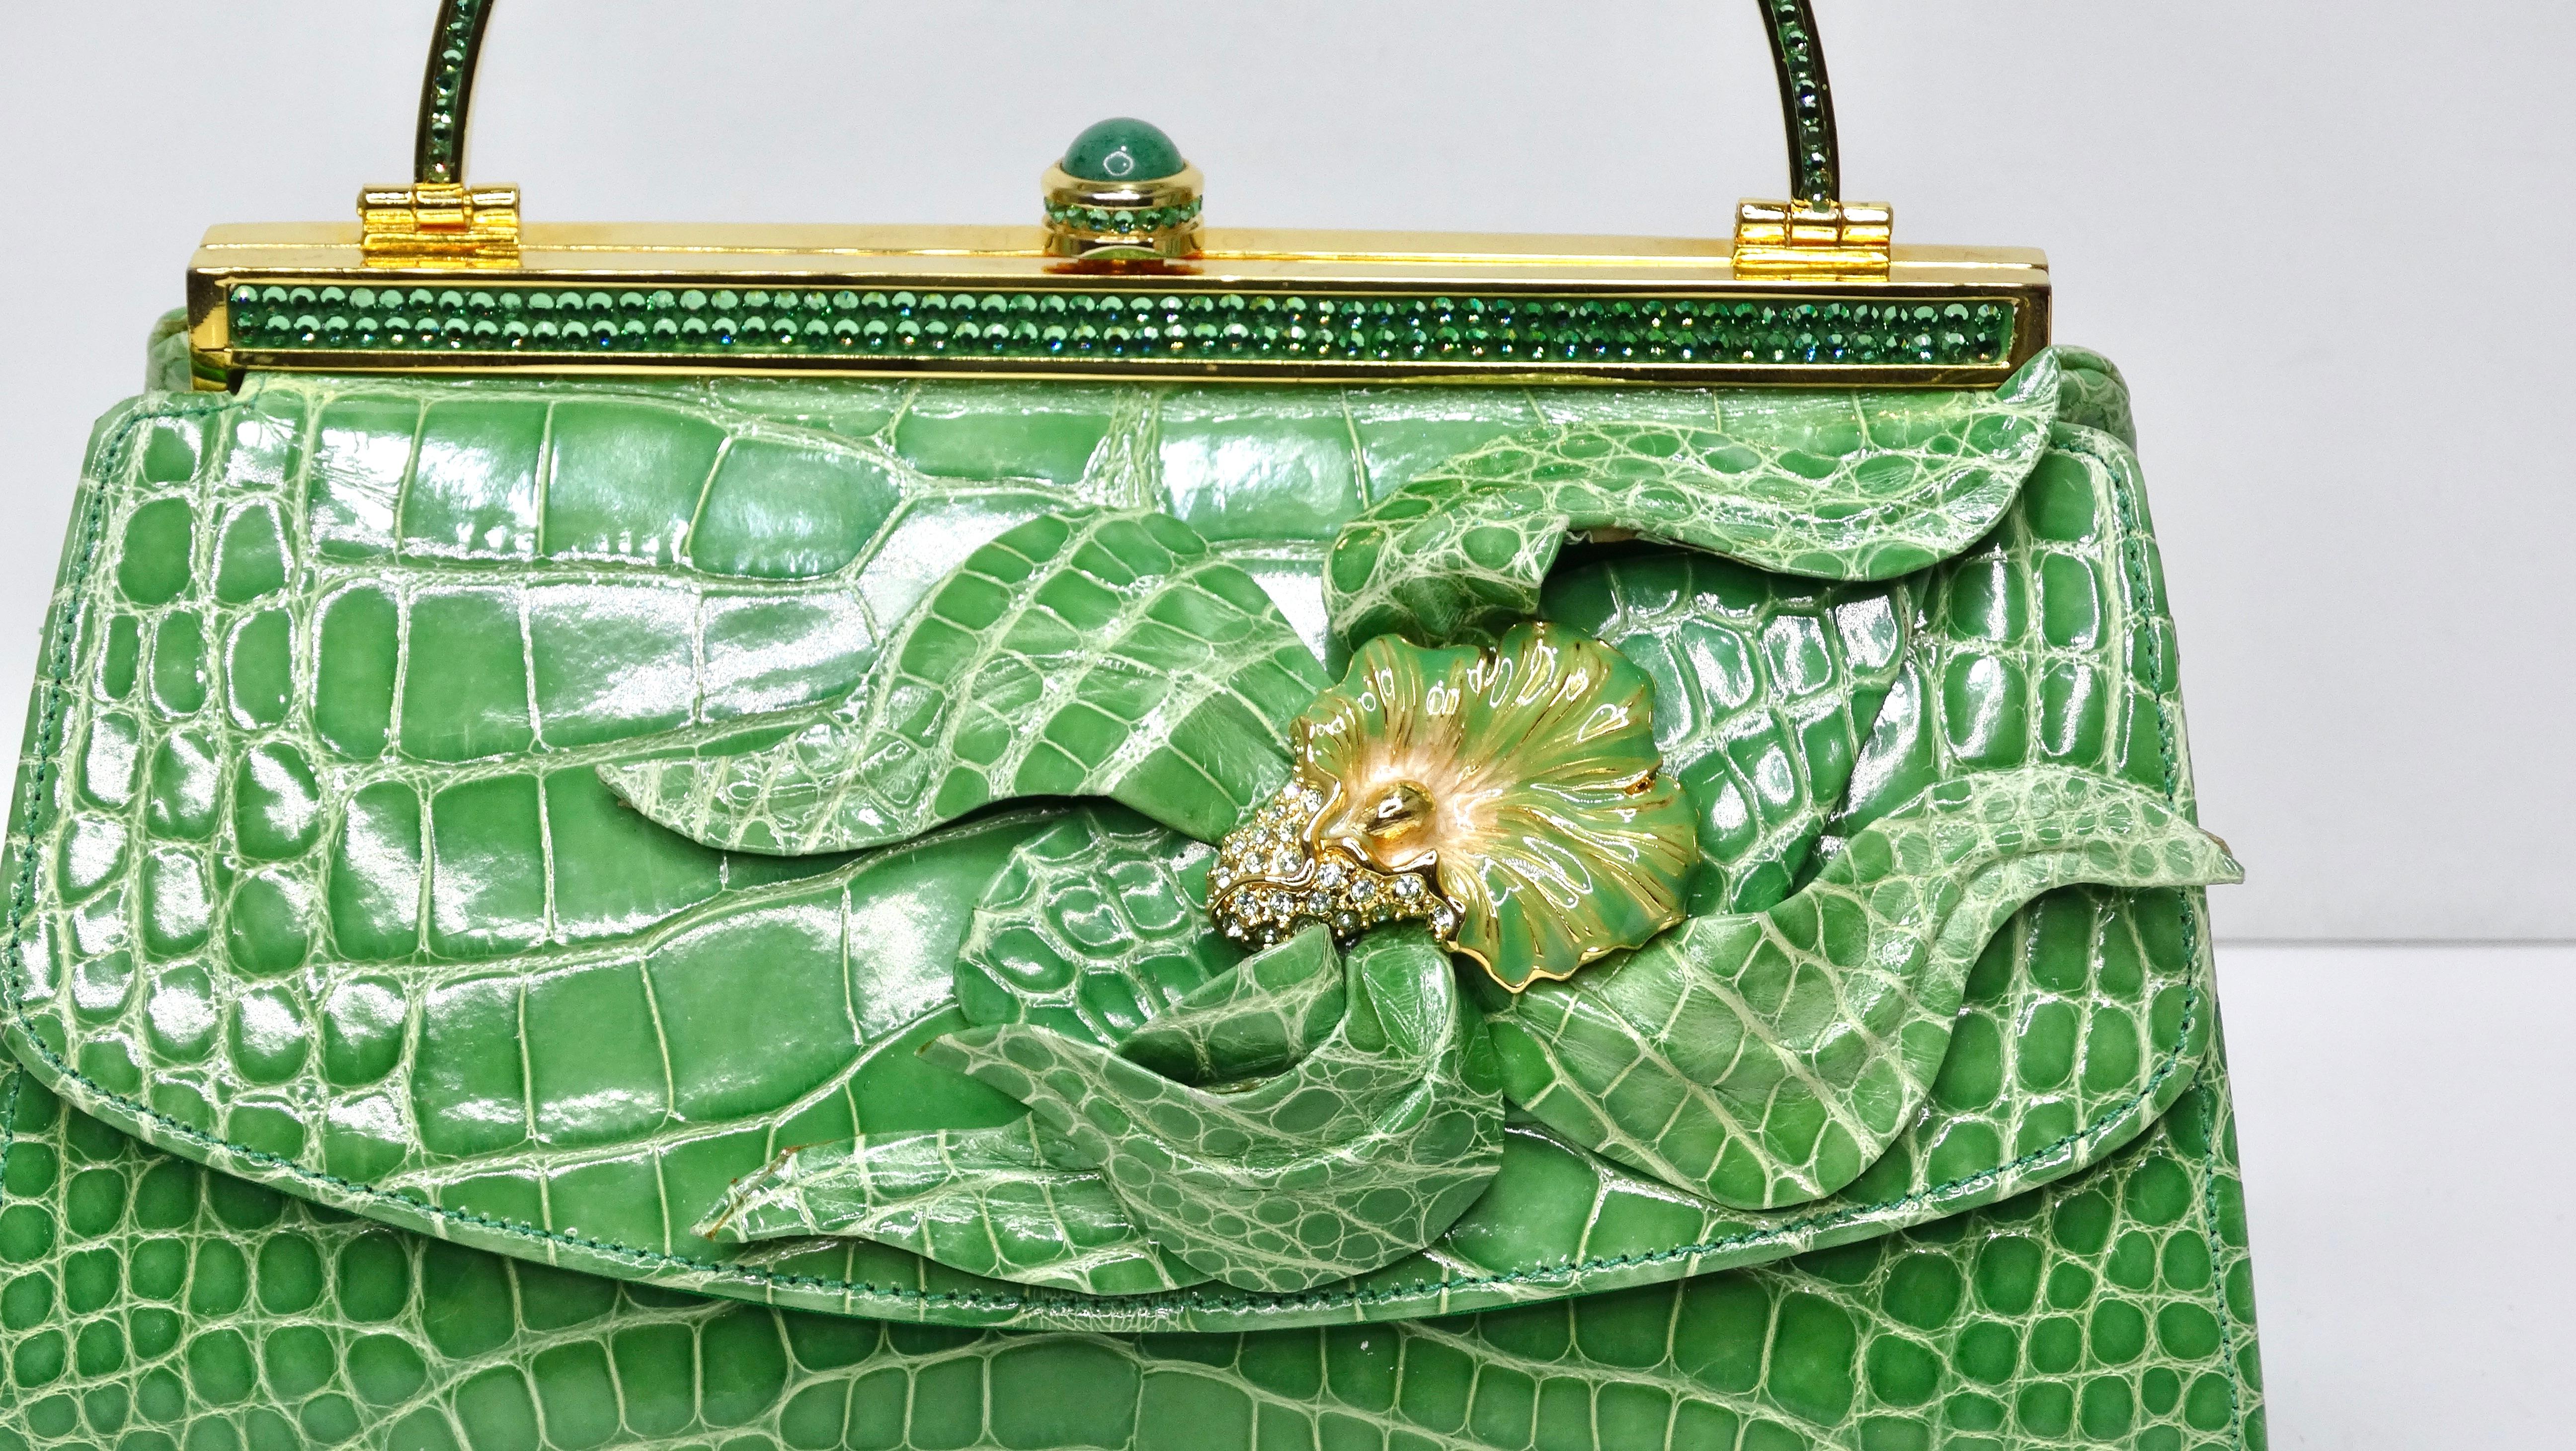 Eleganz und Glamour, hier entlang! Diese von keiner Geringeren als Judith Leiber entworfene Handtasche zieht die Blicke aller Anwesenden garantiert auf sich. Dies ist eine SCHÖNE Judith Leiber in echtem grünen Alligator in ausgezeichnetem Zustand.